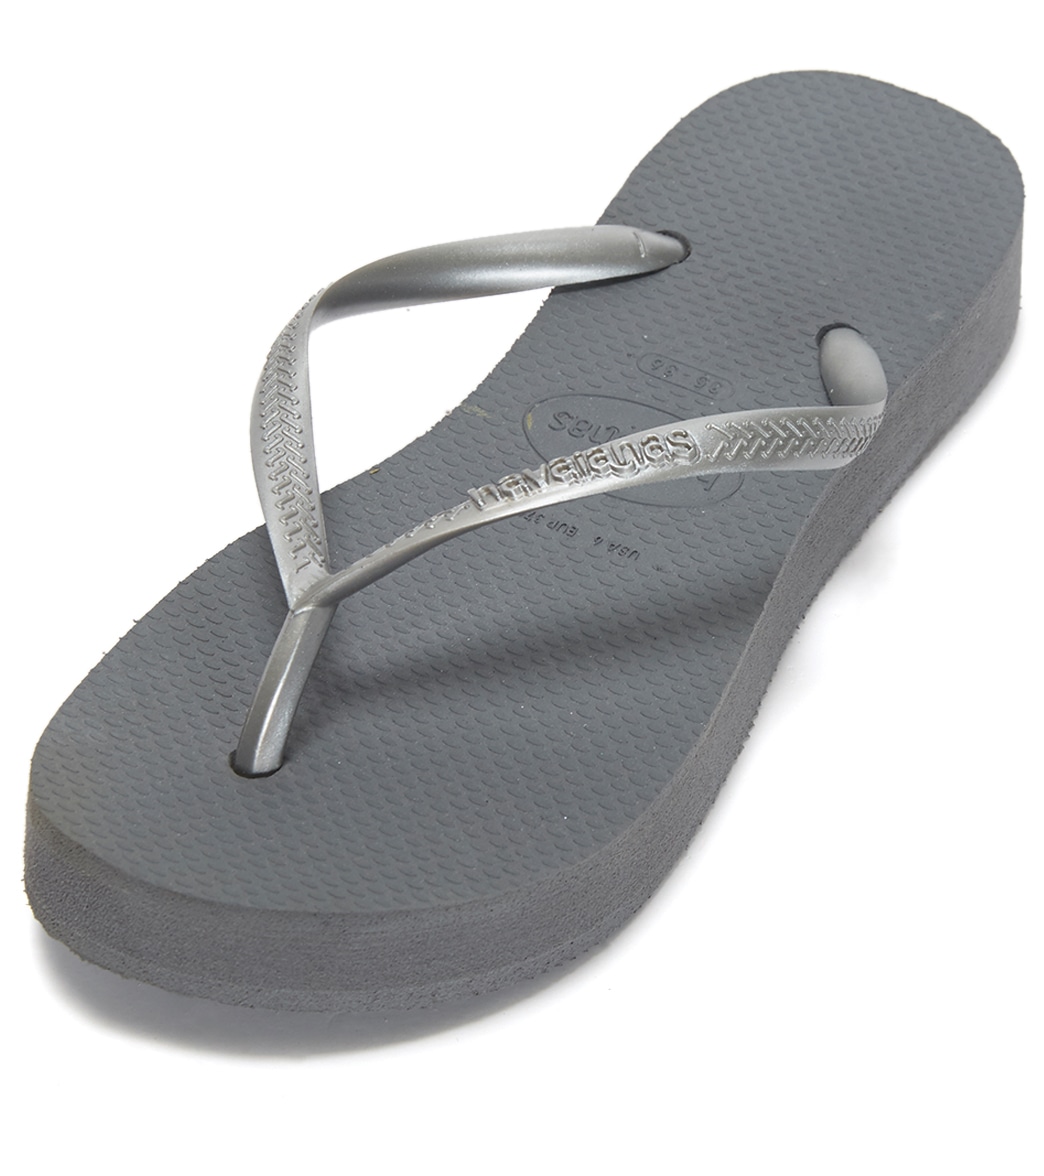 Havaianas Slim Flatform Sandals - Steel Grey 35/36 - Swimoutlet.com